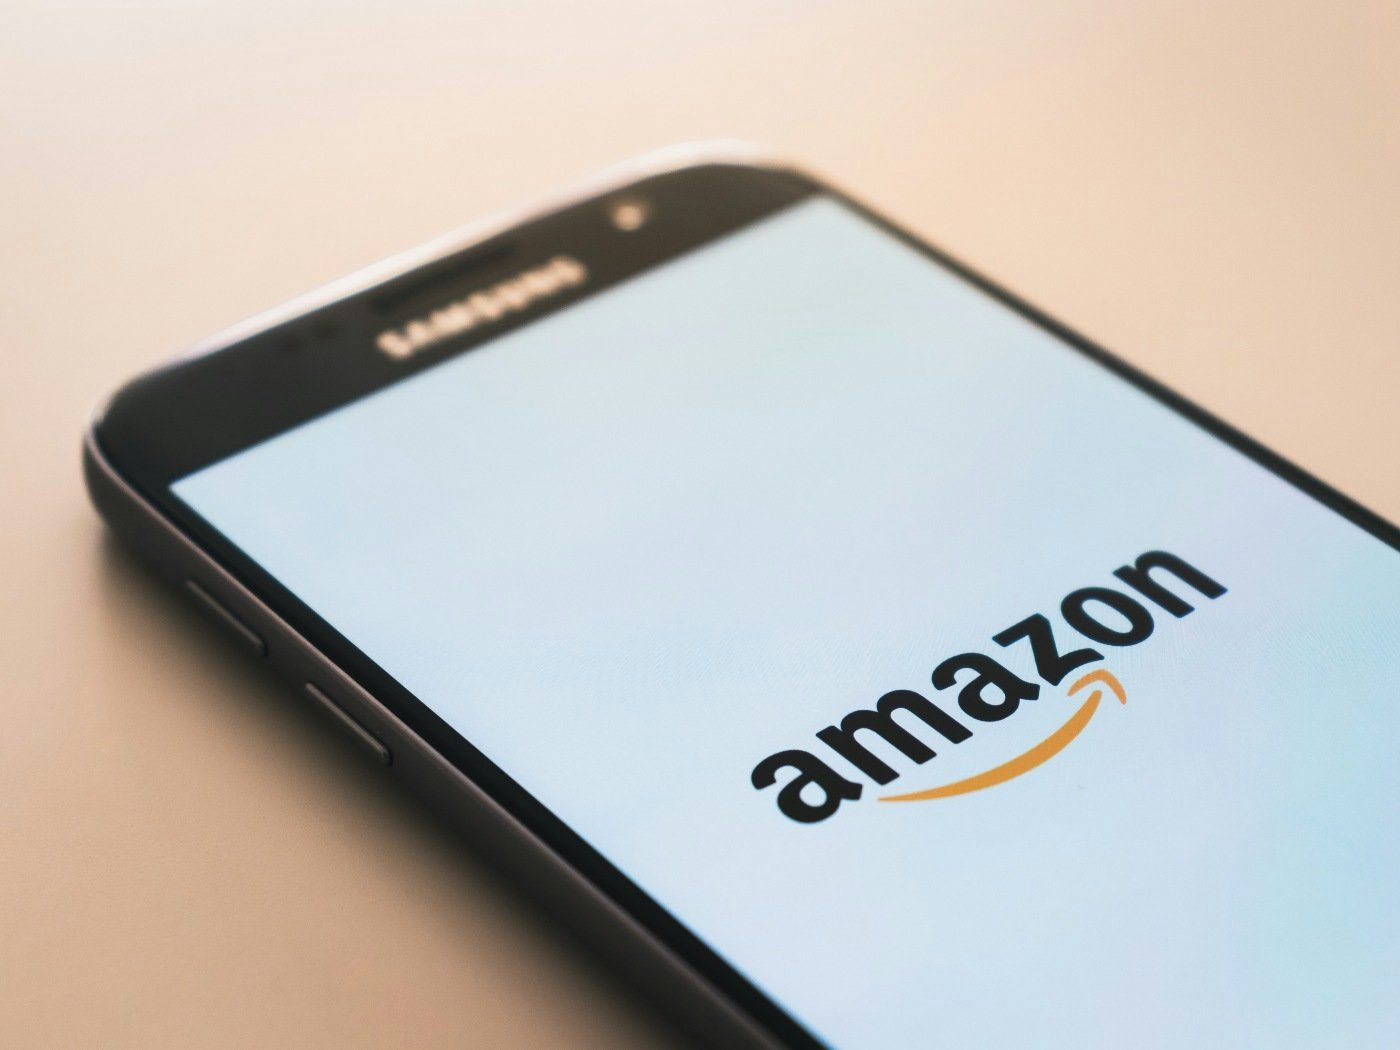 Amazon Shop einrichten – Step by Step zum eigenen Store